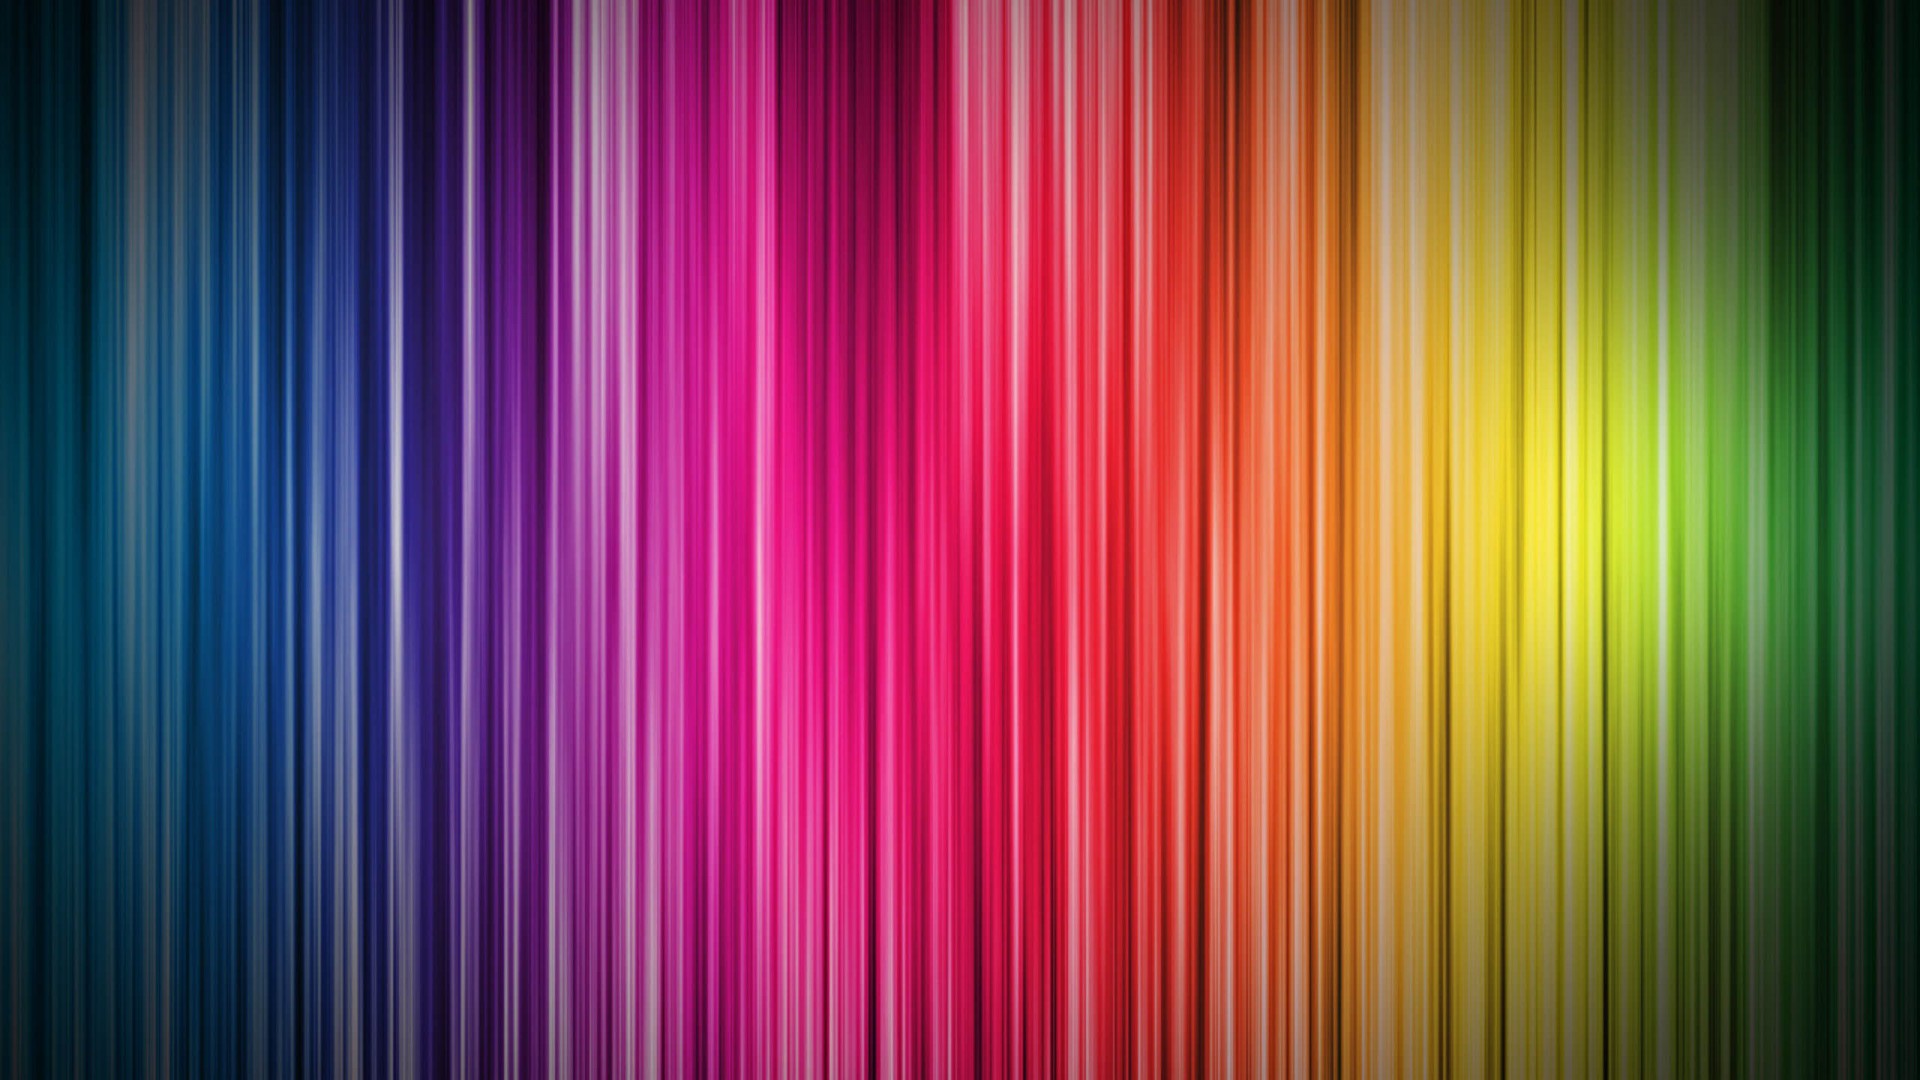  Rainbow  Wallpapers  HD free 2021 PixelsTalk Net